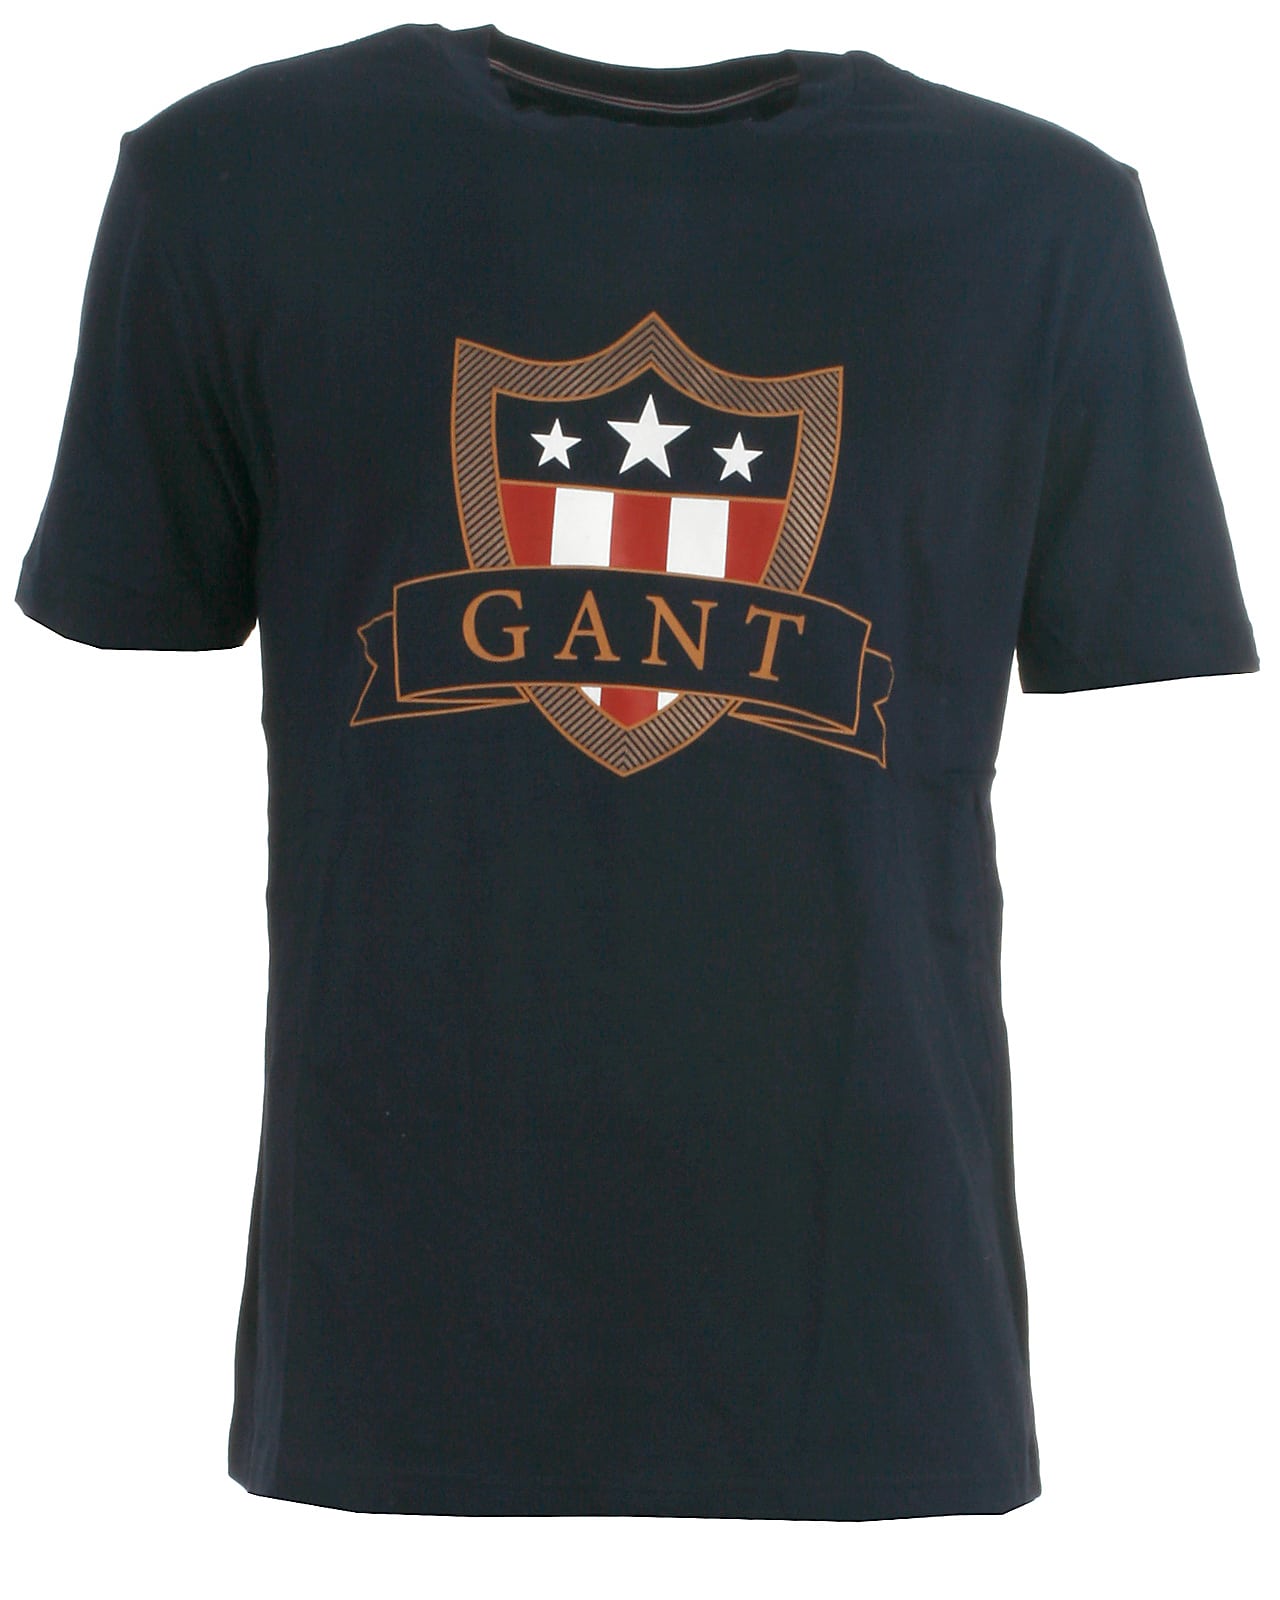 Gant t-shirt s/s, navy - 176,16år